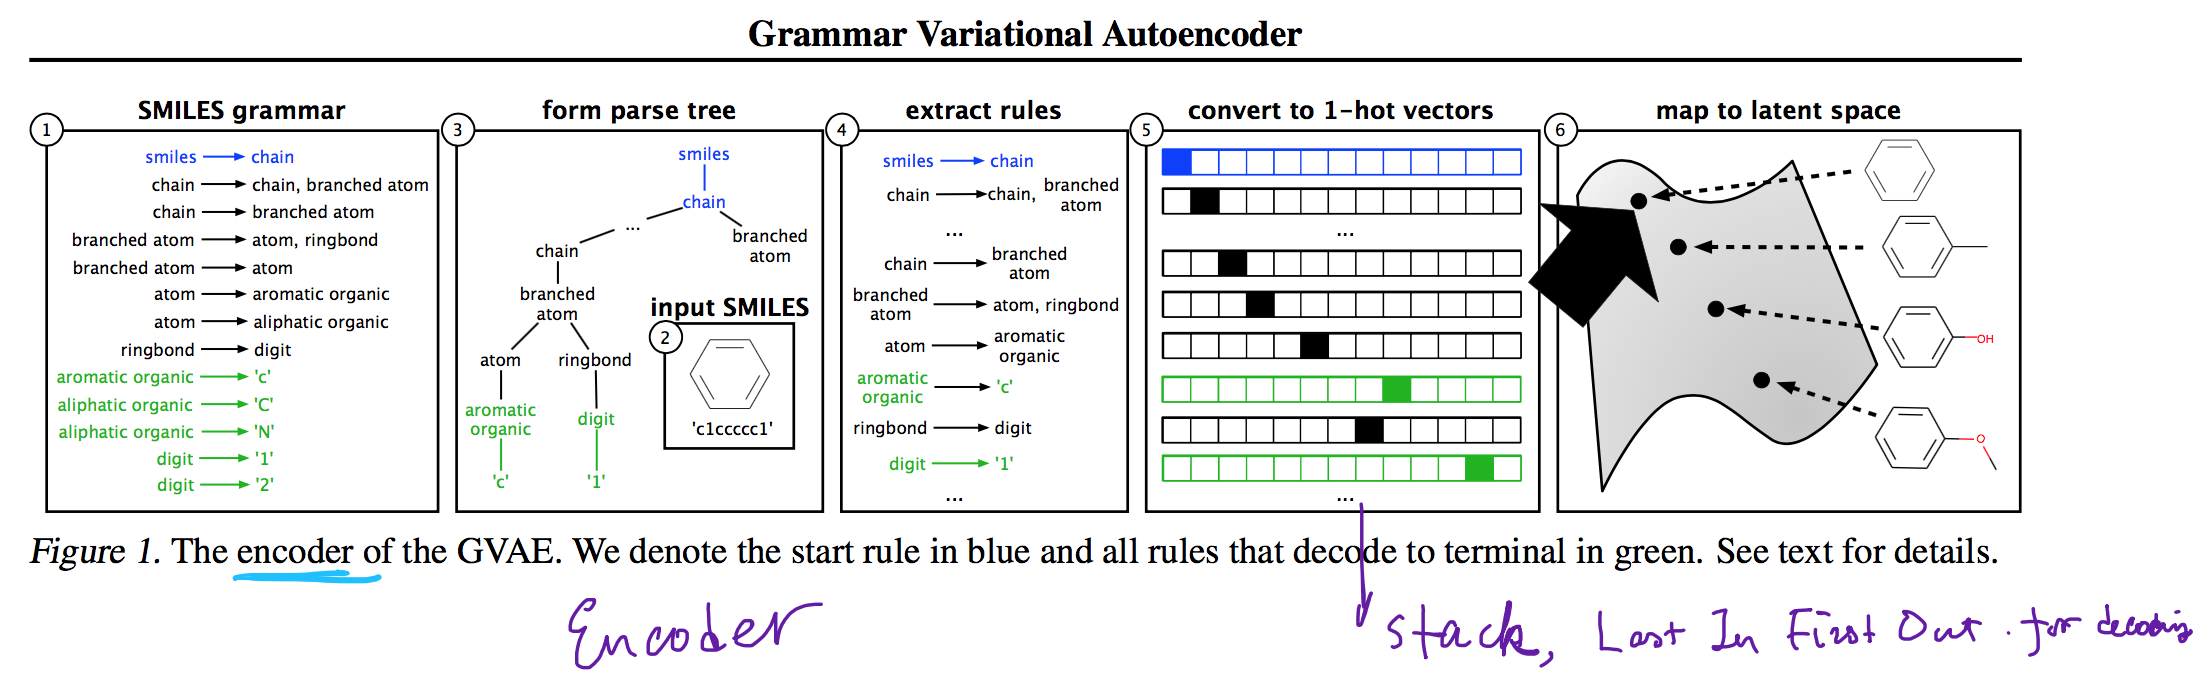 grammar_variational_encoder